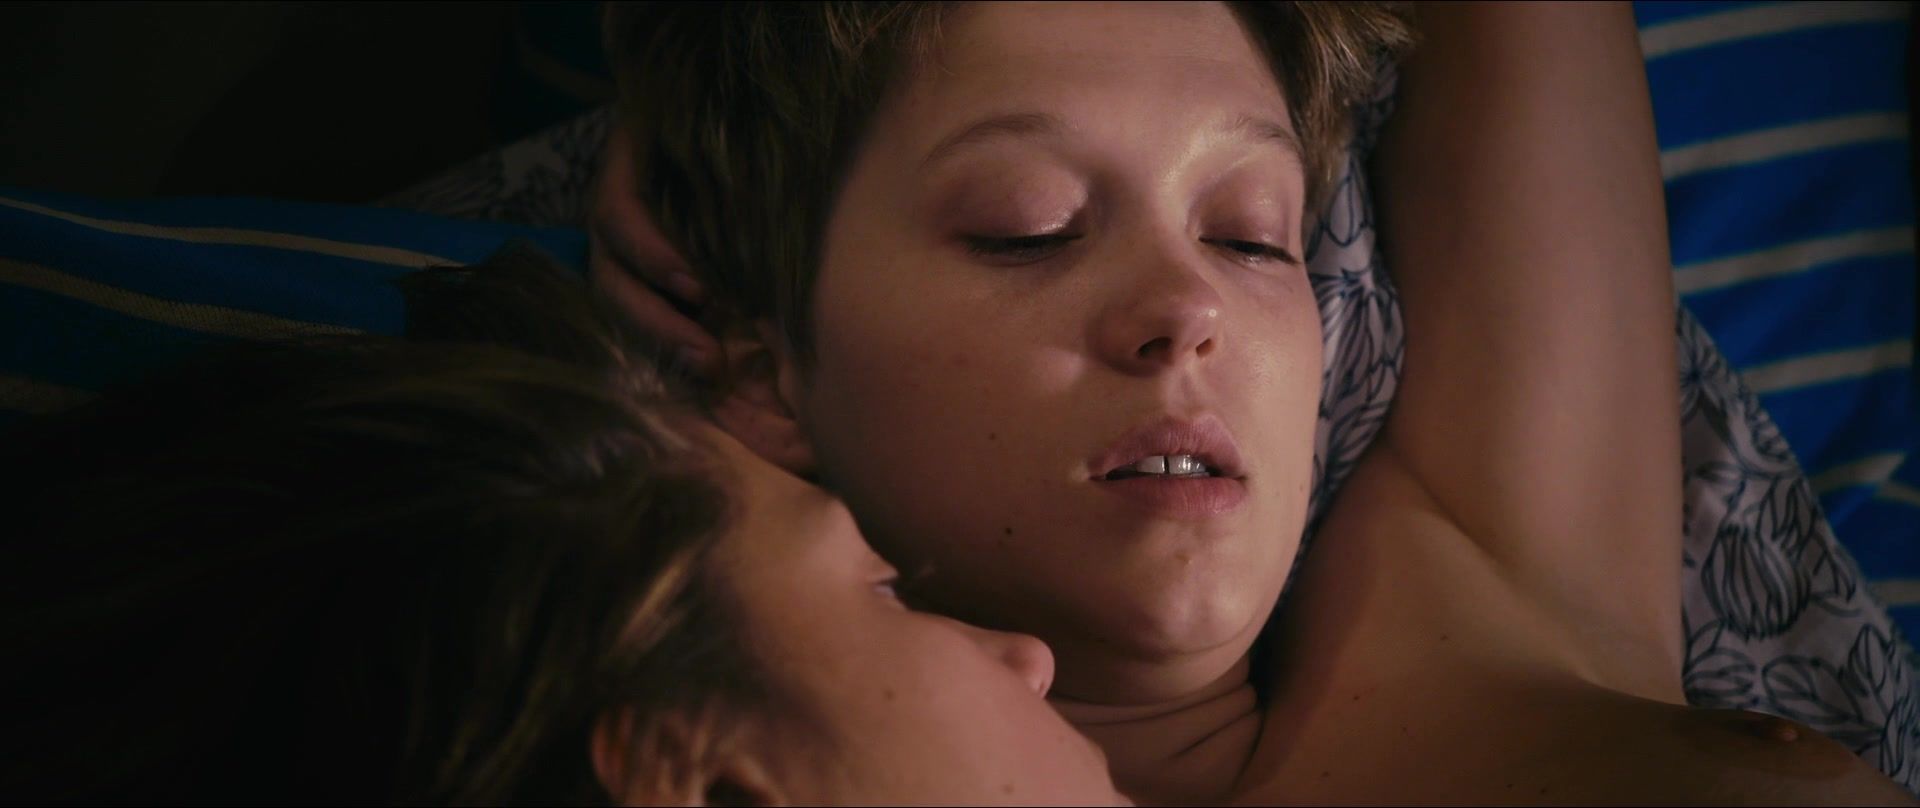 Best Blowjobs Best lesbian scene in movies | Adele Exarchopoulos nude & Léa Seydoux naked | The film "Blue Is The Warmest Color" (2013) SeekingArrangemen... - 2